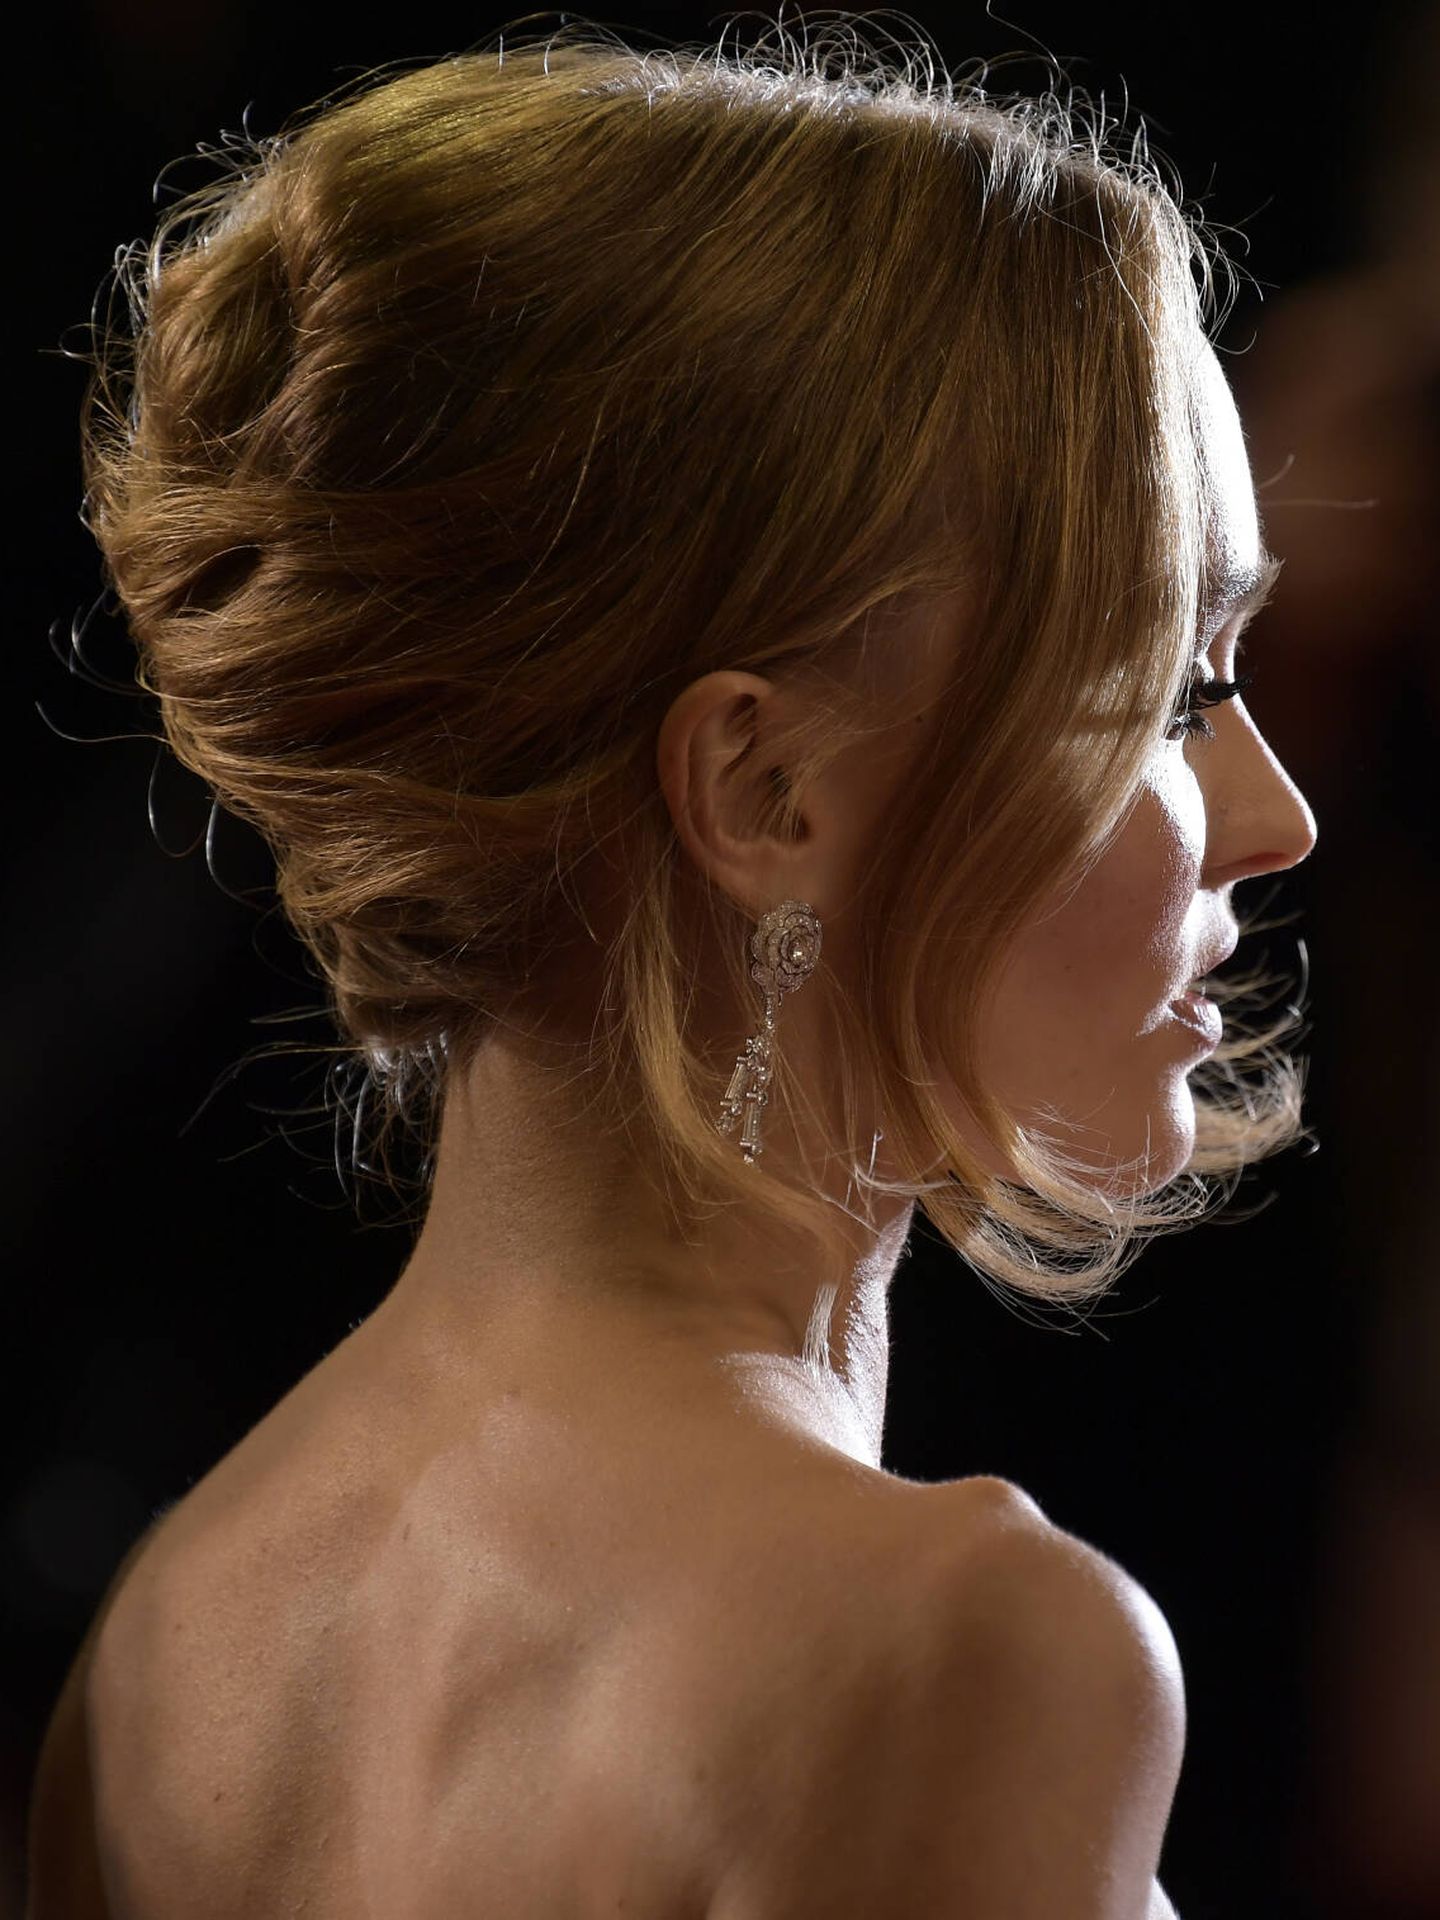 El moño retro de Lily-Rose Depp en Cannes. (Getty/Kristy Sparow)